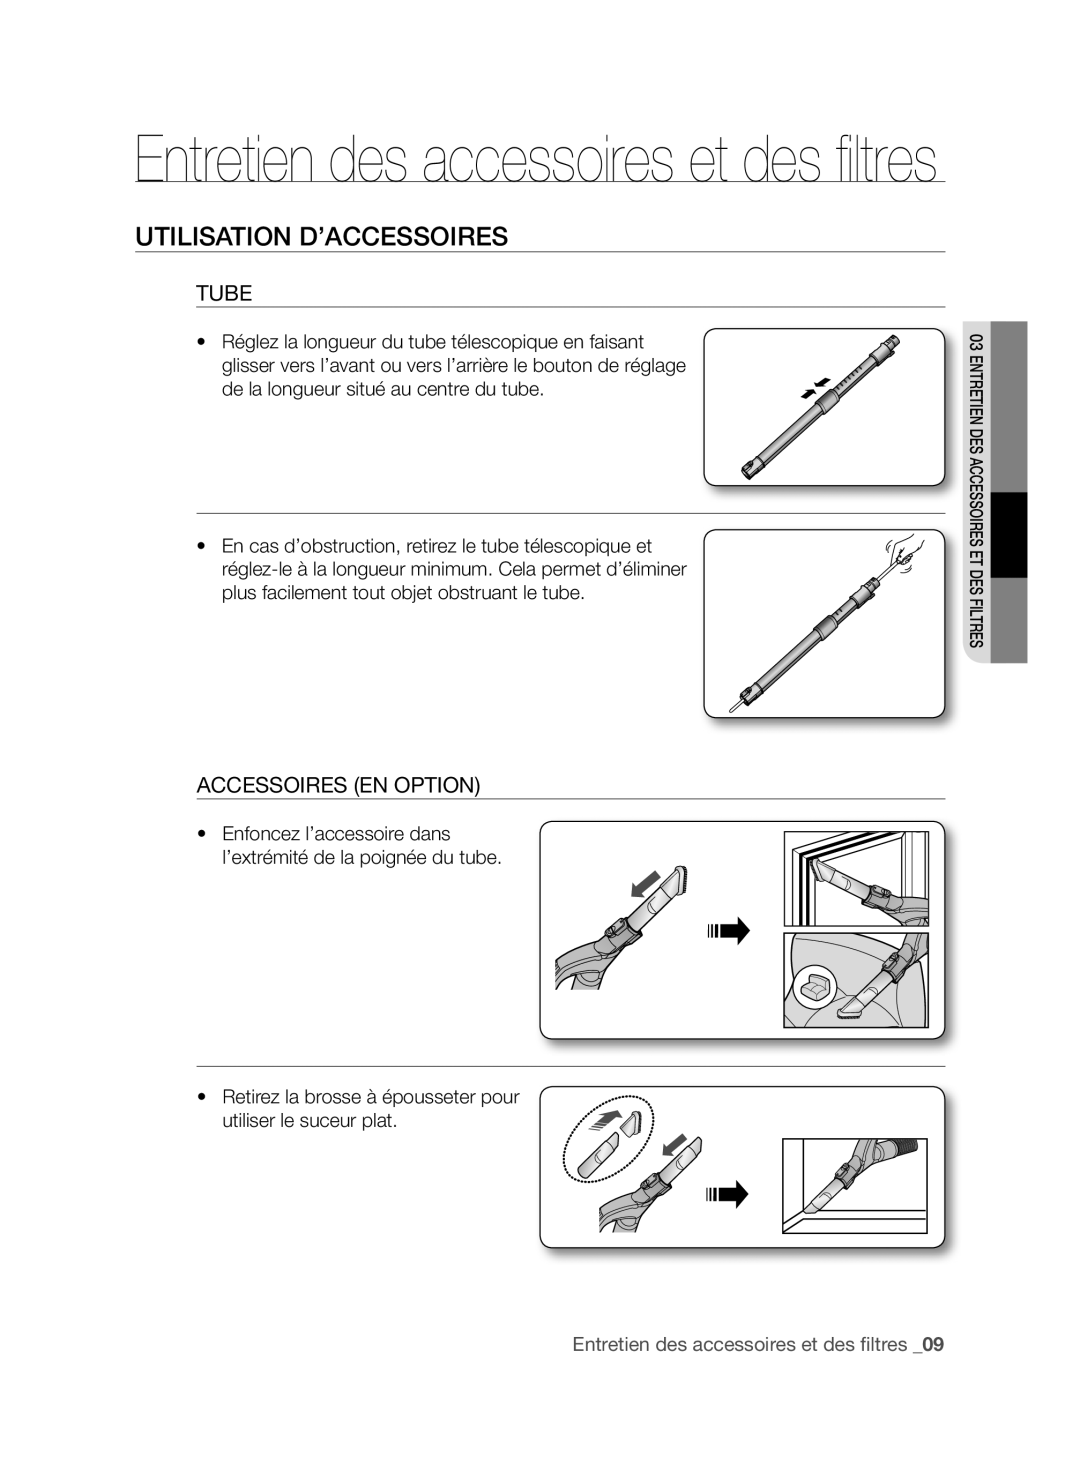 Samsung VCC96P0H1G Utilisation D’Accessoires, Tube, Accessoires En Option, Entretien des accessoires et des filtres_09 